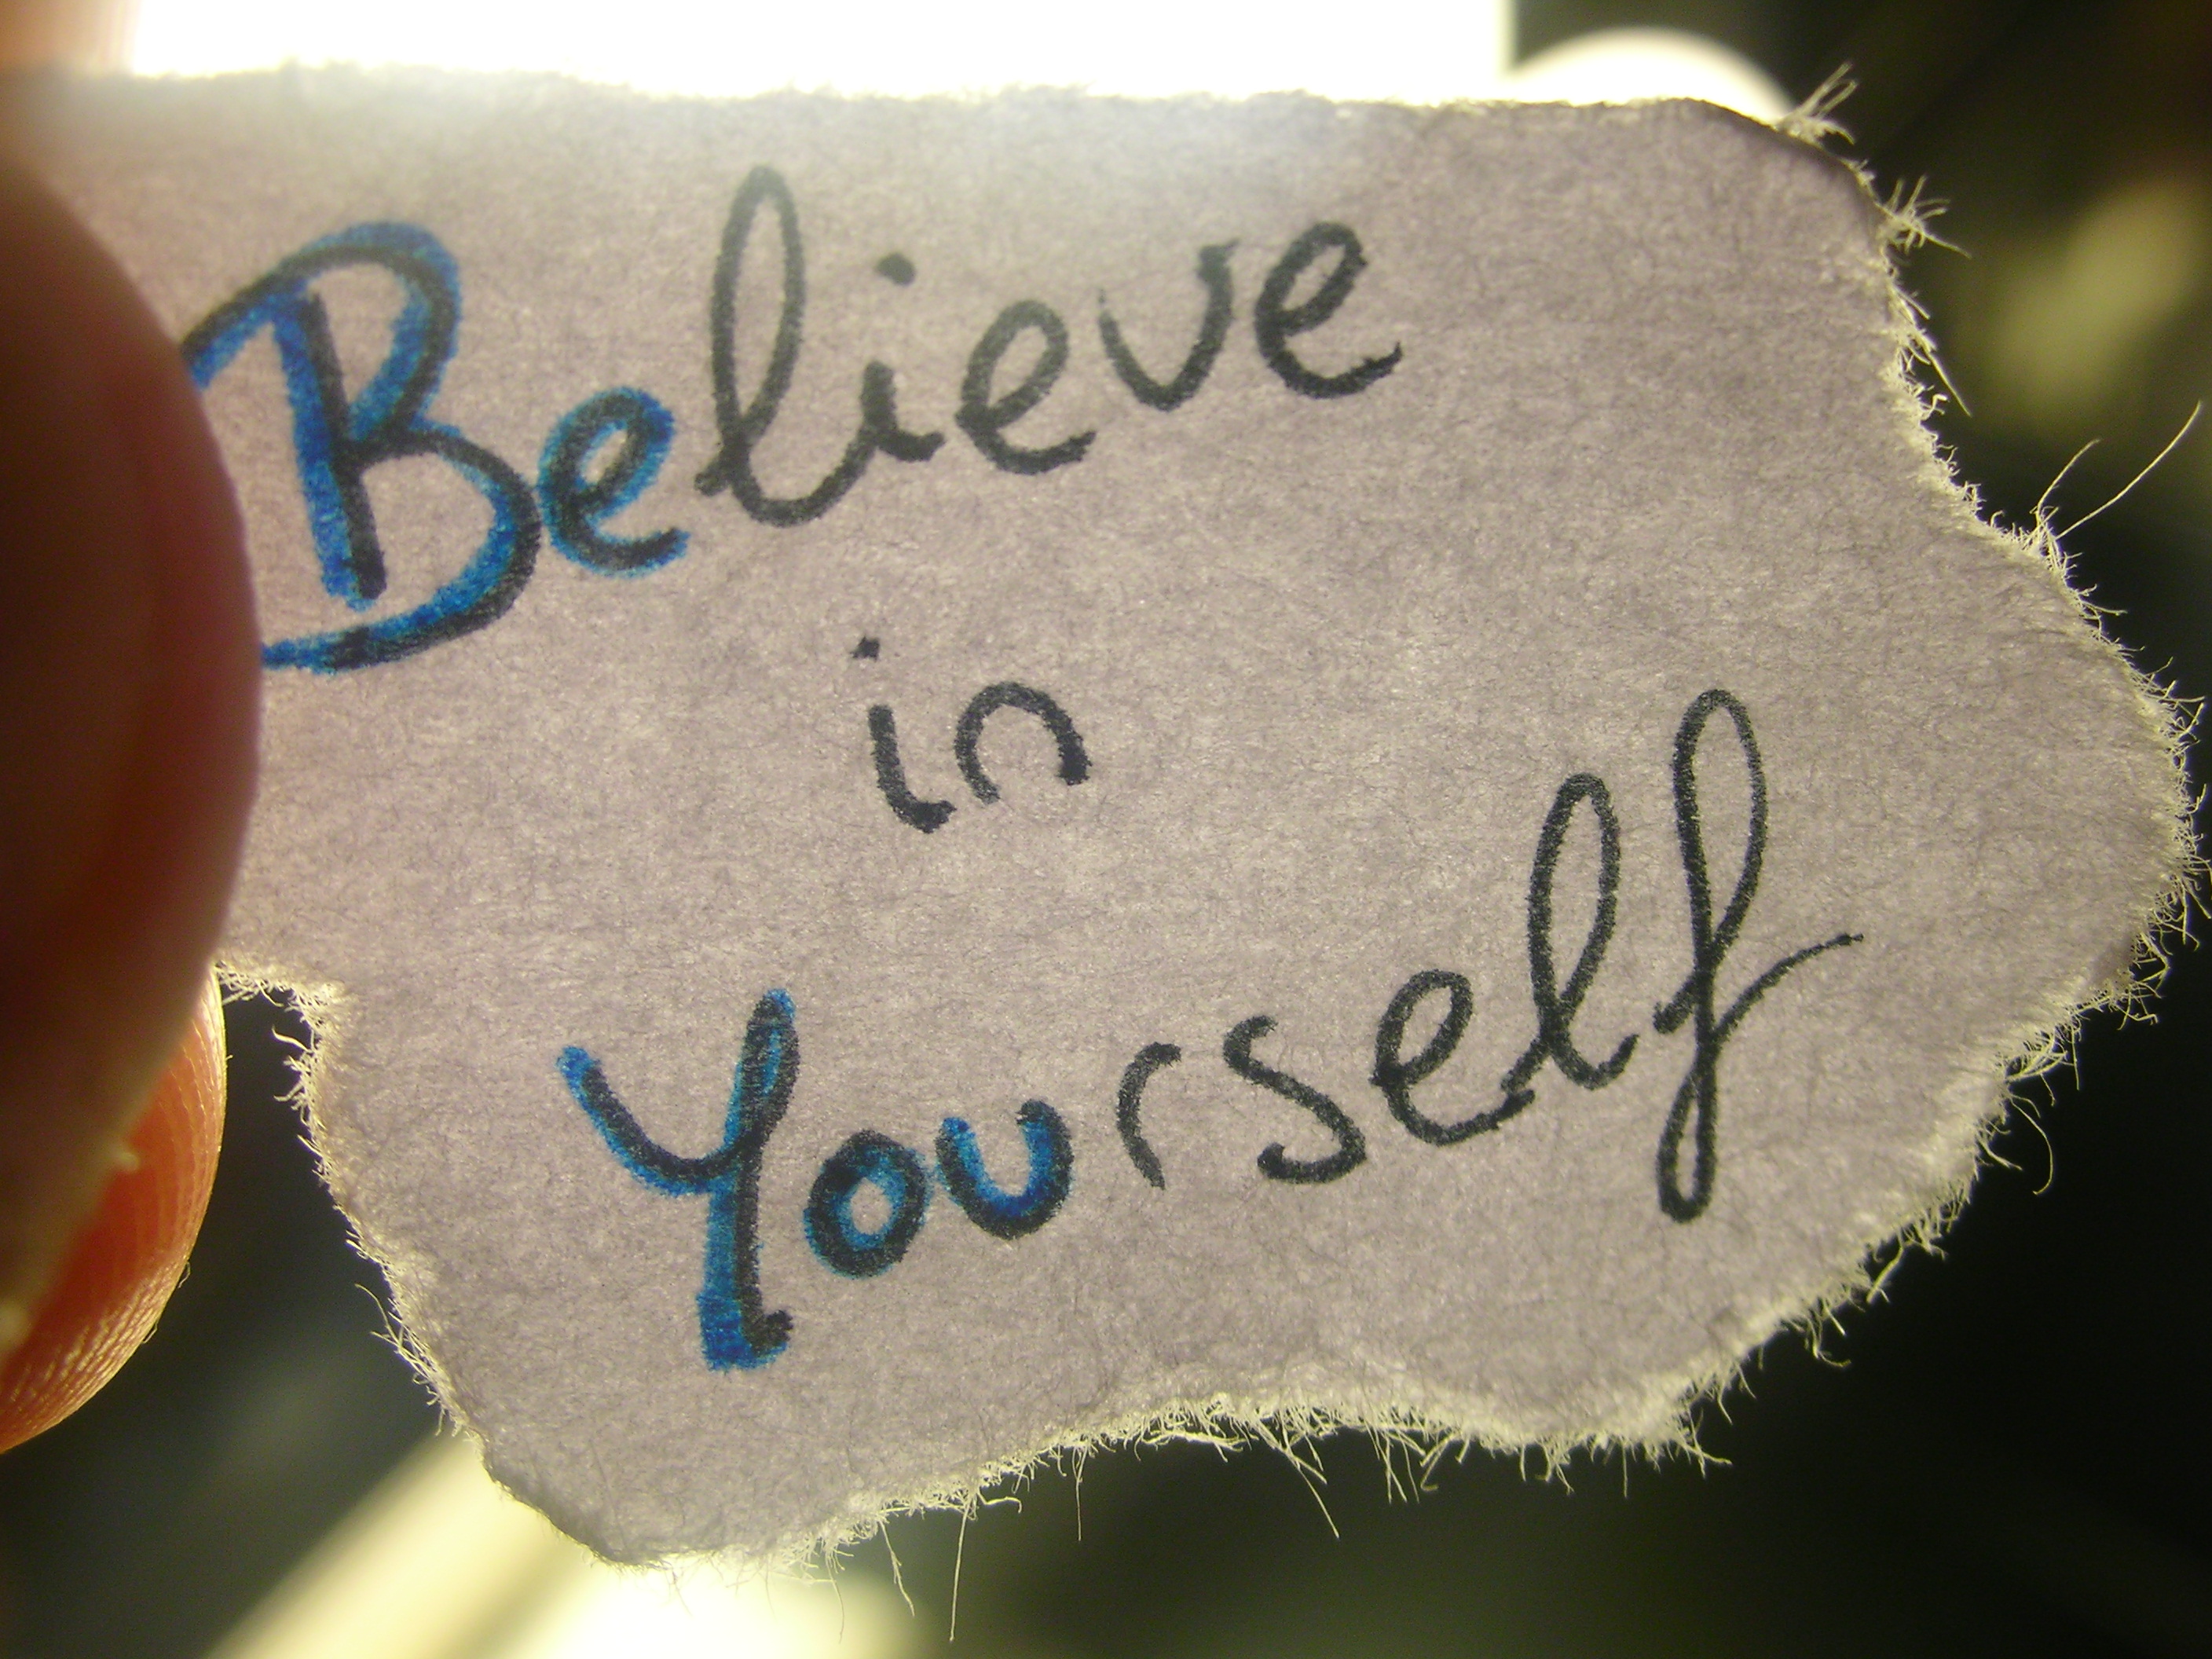 short speech on believe in yourself